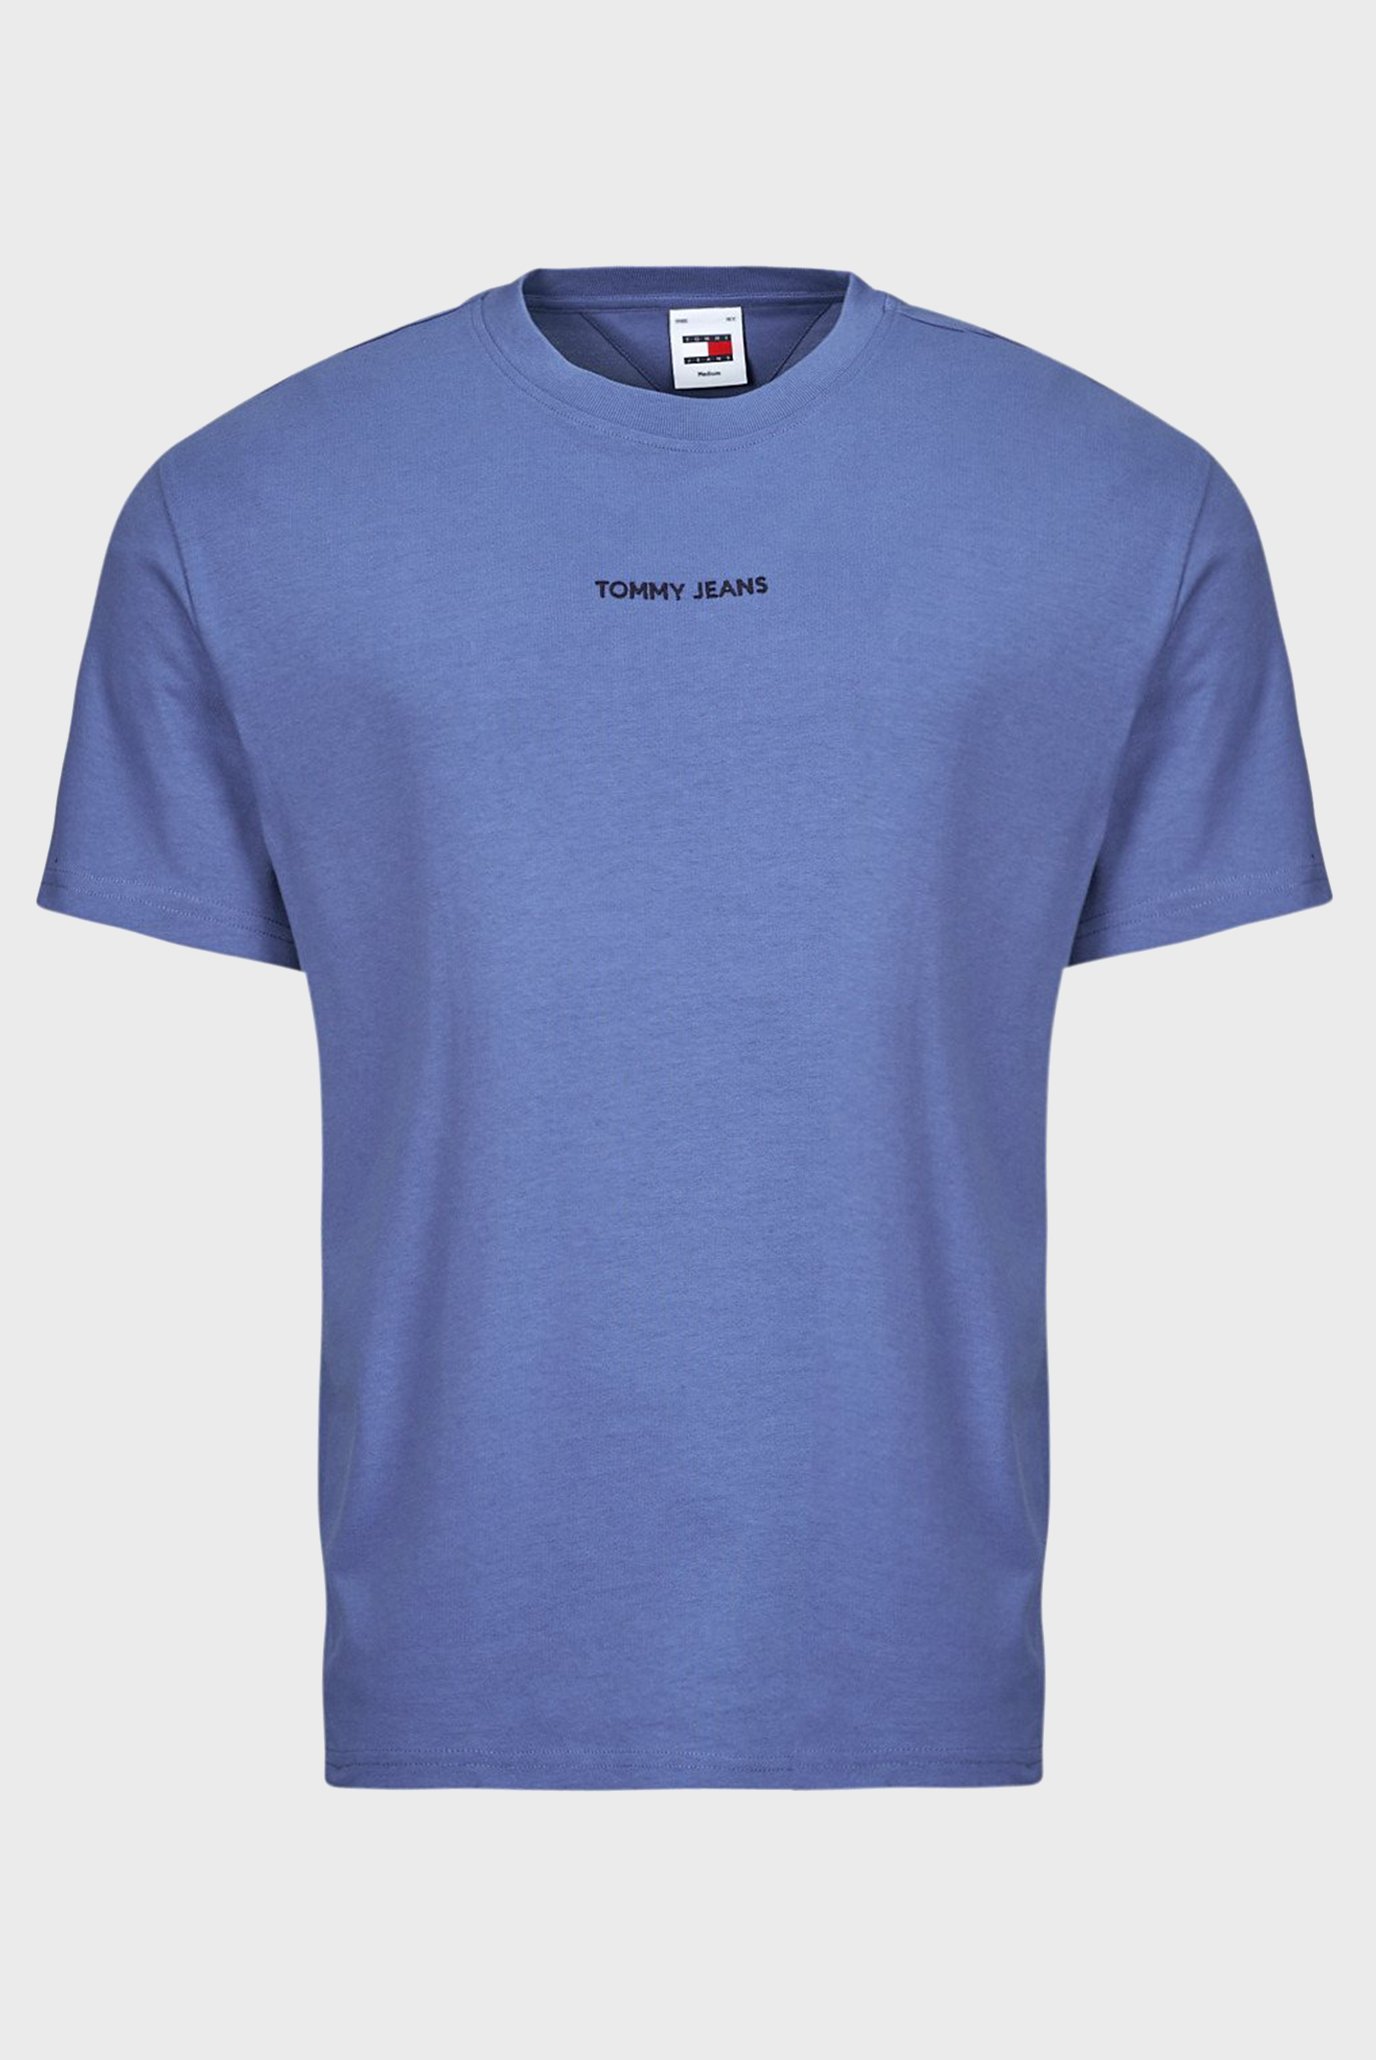 Чоловіча синя футболка TJM REG S NEW CLASSICS TEE EXT 1